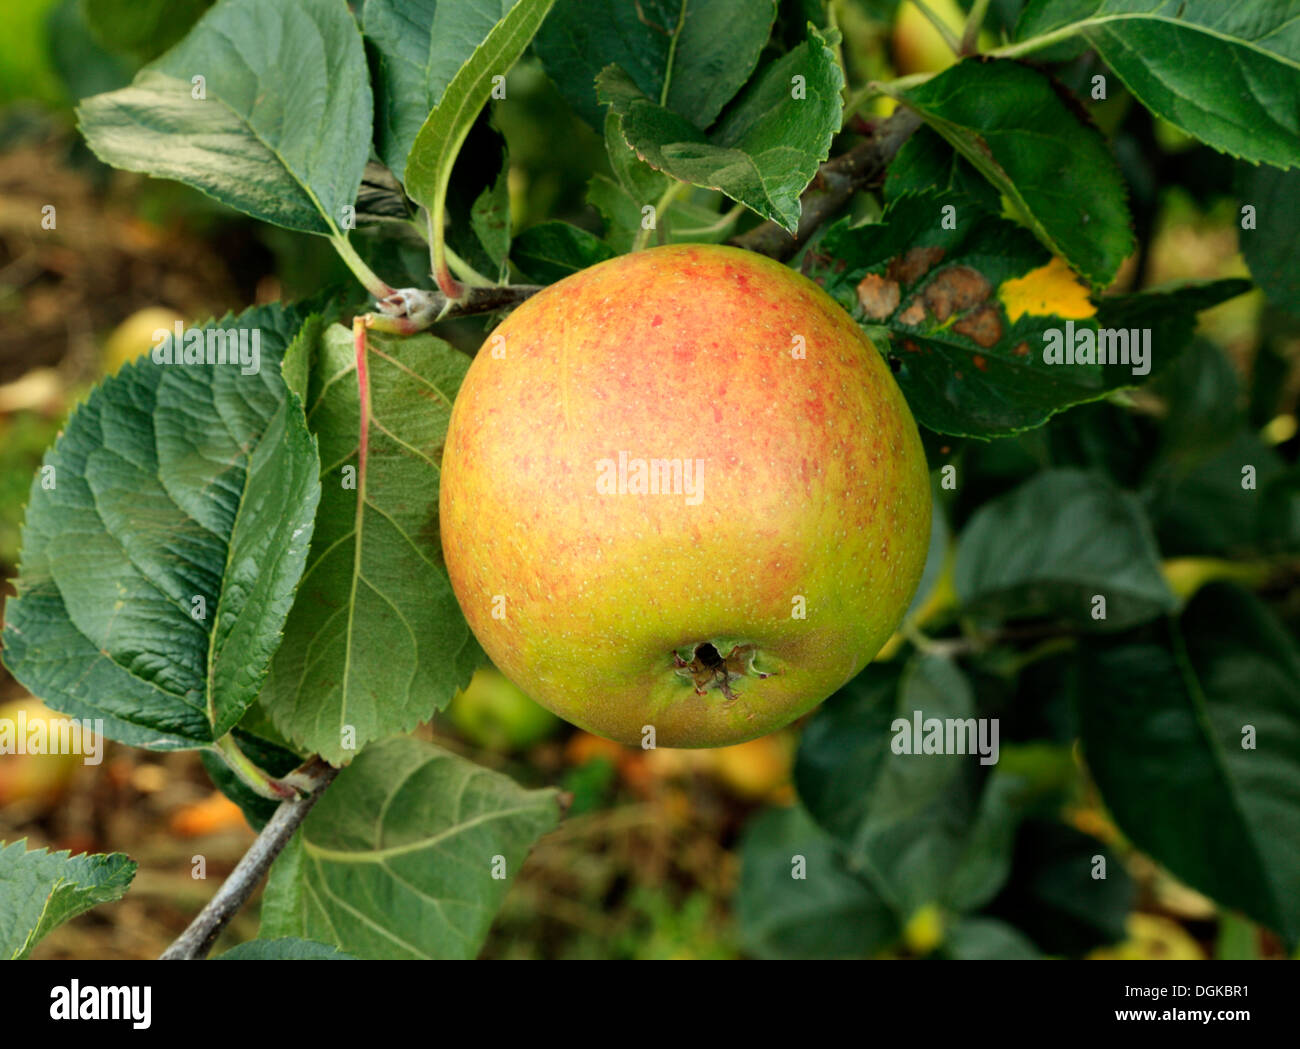 Apple 'Blenheim Orange',  malus domestica, apples, named variety varieties growing on tree Stock Photo